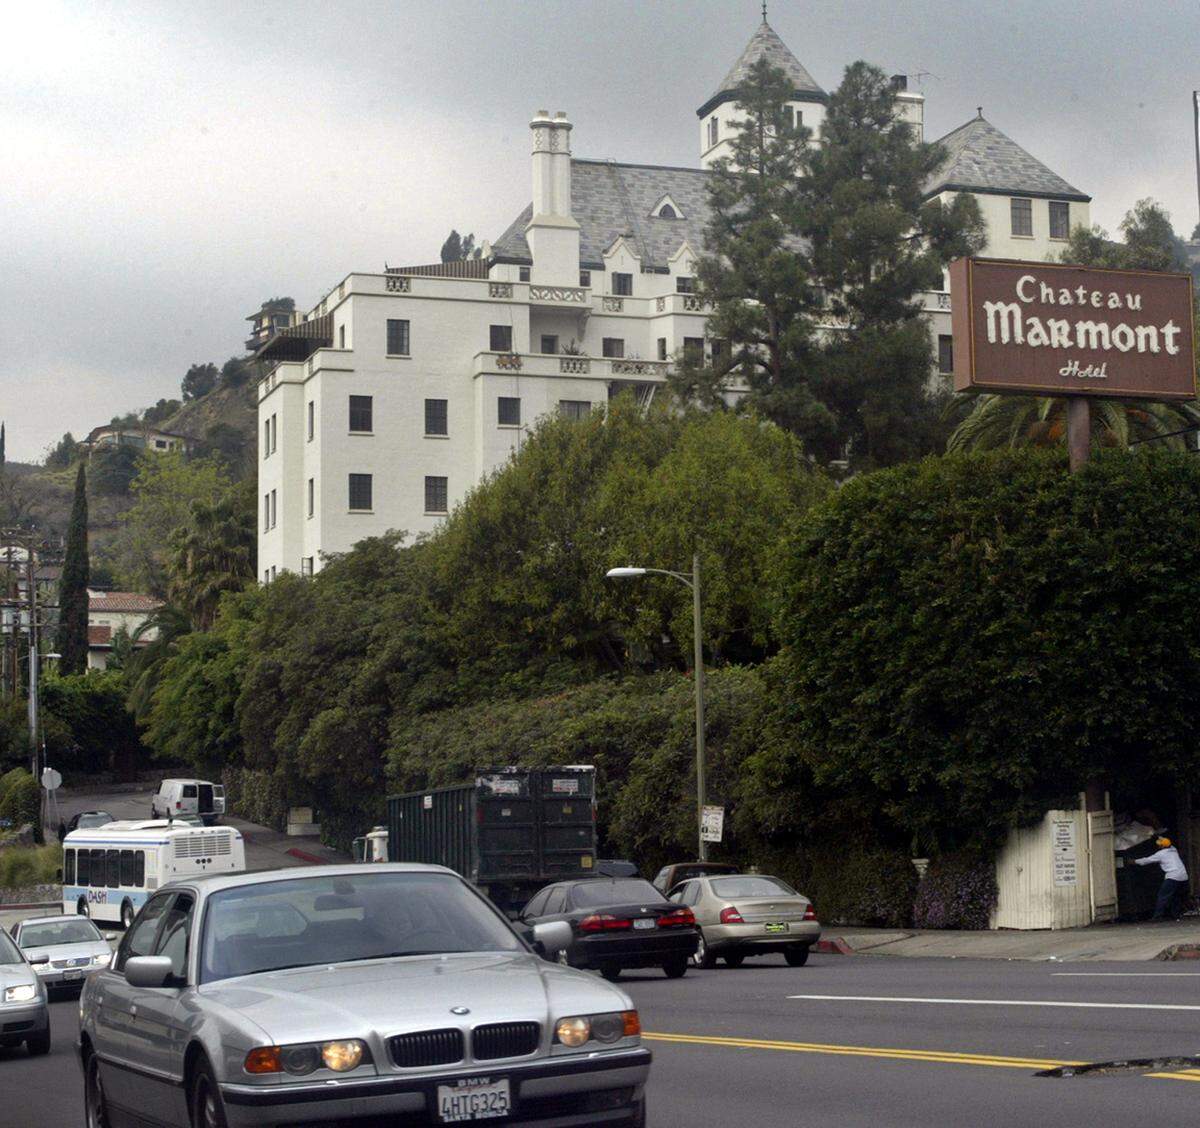 Das Chateau Marmont, 1929 als französisches Schloss konzipiert, gilt als Hotspot der Hollywood-Elite. Hier wurde unter anderem der Film "Somewhere" von Sophia Coppola gedreht.